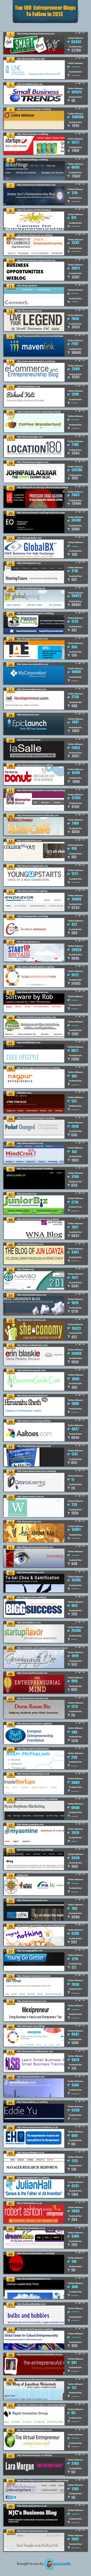 Top 100 Entrepreneur blogs to follow